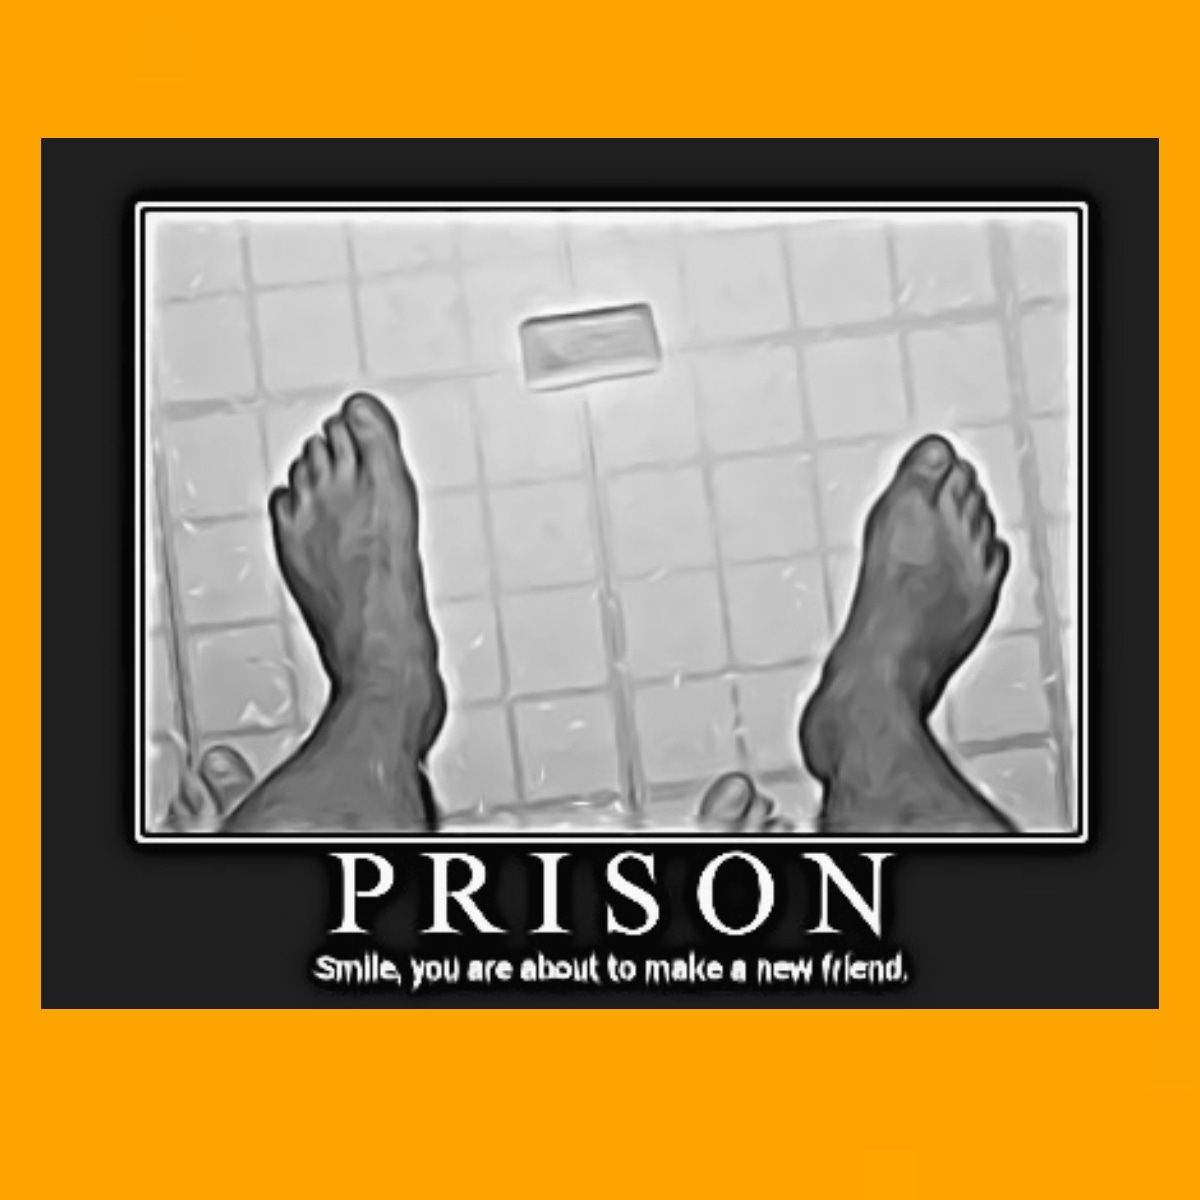 A prison rape meme.